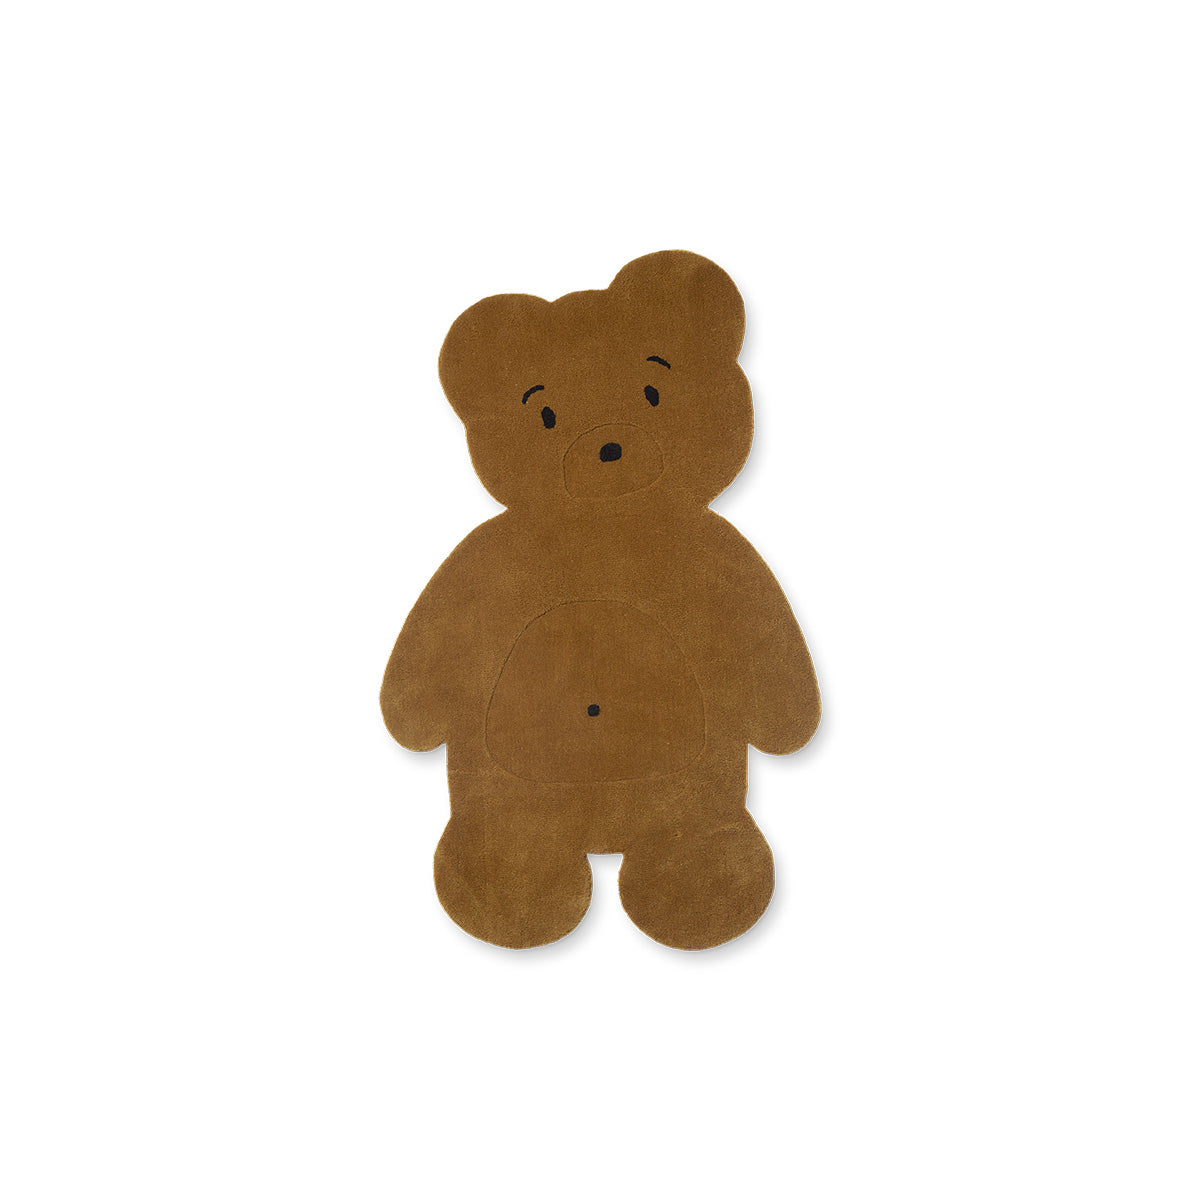 Het Liewood jena bear vloerkleed is het perfecte accessoire voor op de kinderkamer. Dit leuke vloerkleer in de vorm van een beer maakt het kamertje helemaal af. VanZus.